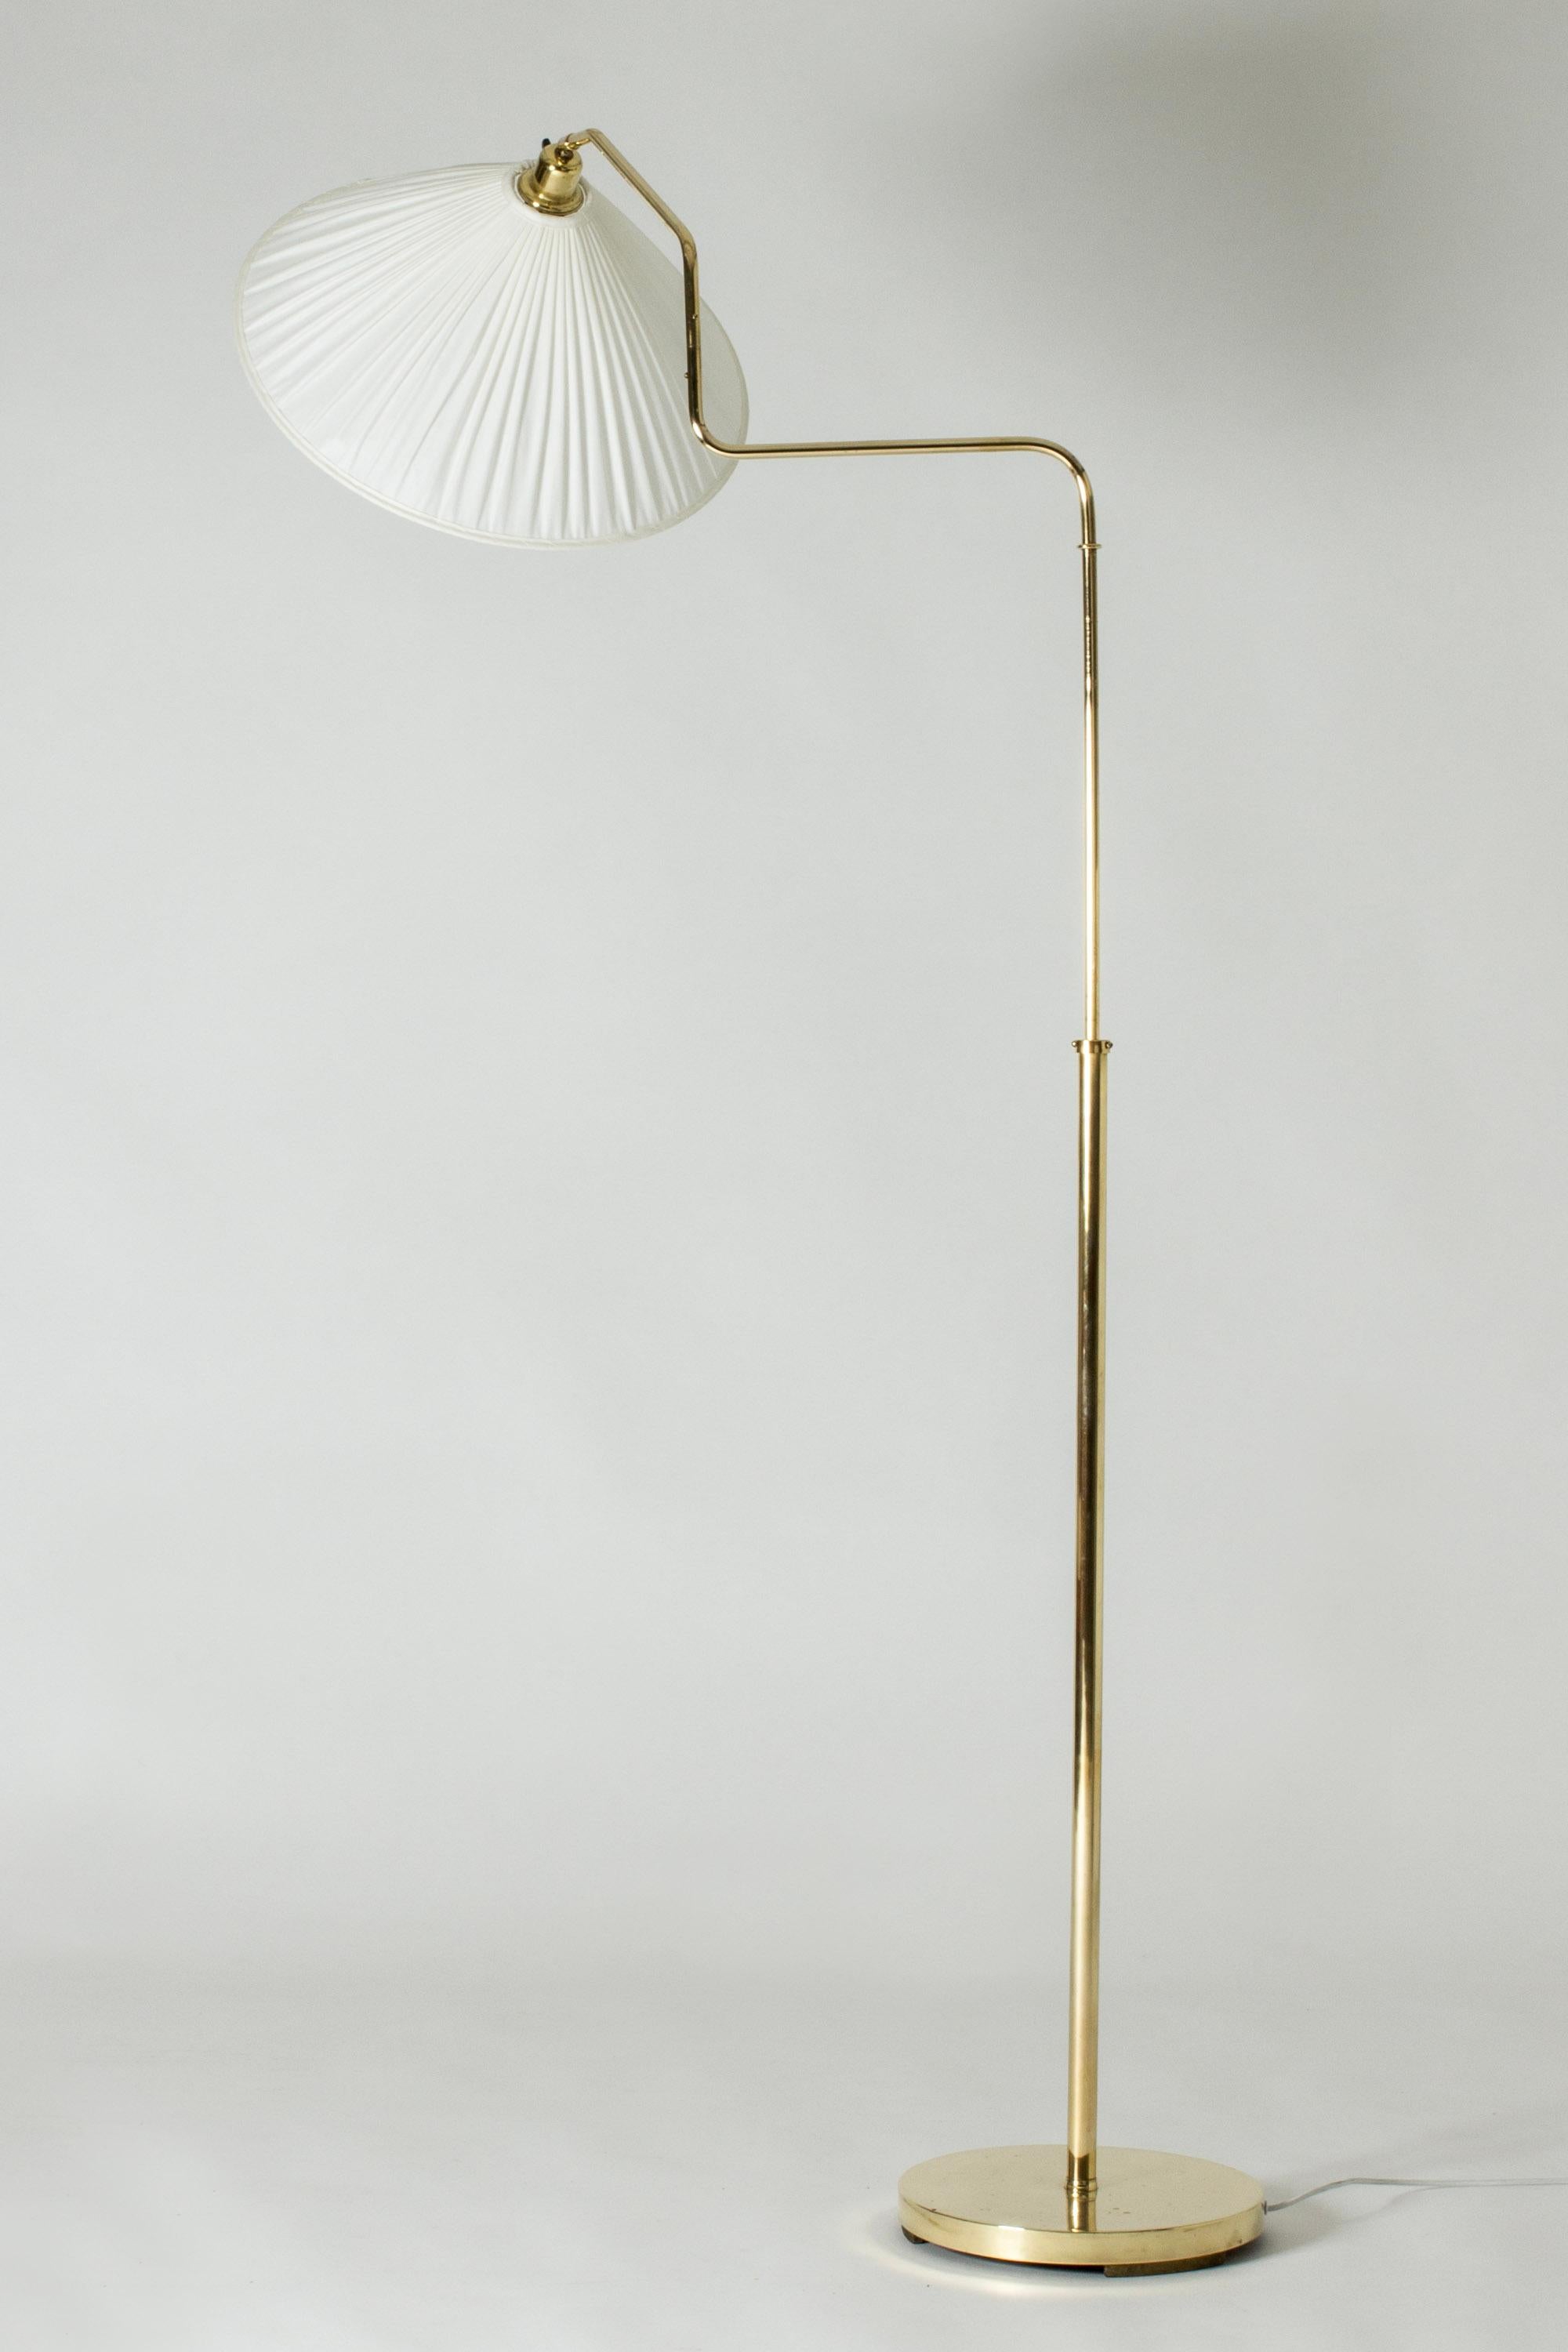 Scandinavian Modern Scandinavian Midcentury Brass Floor Lamp, Sweden, 1940s